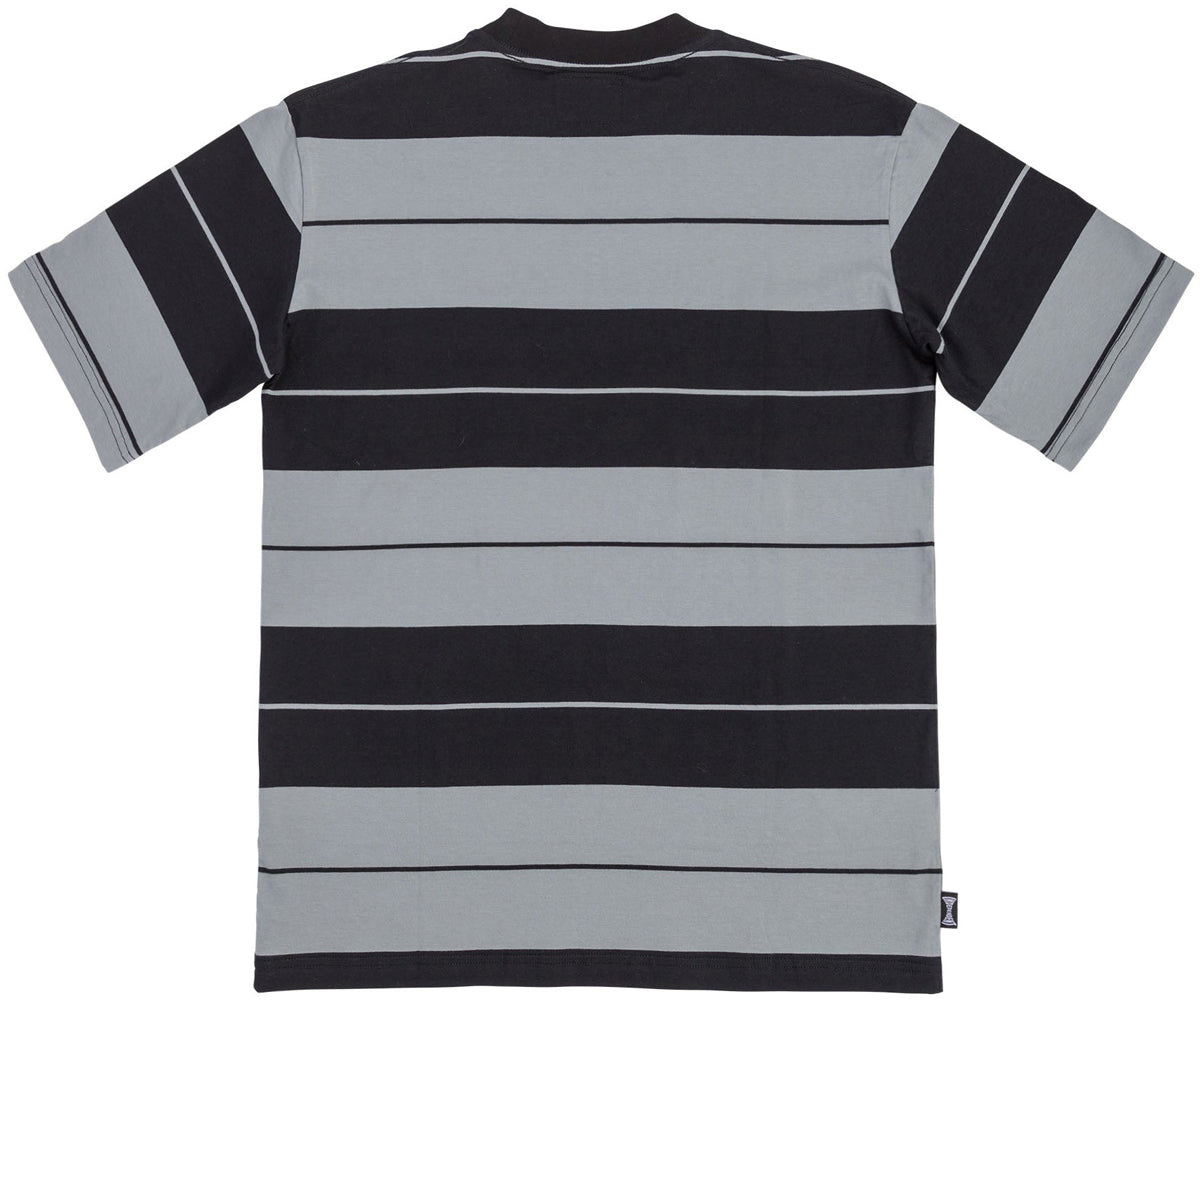 Independent Osage Pocket T-Shirt - Grey/Black image 3